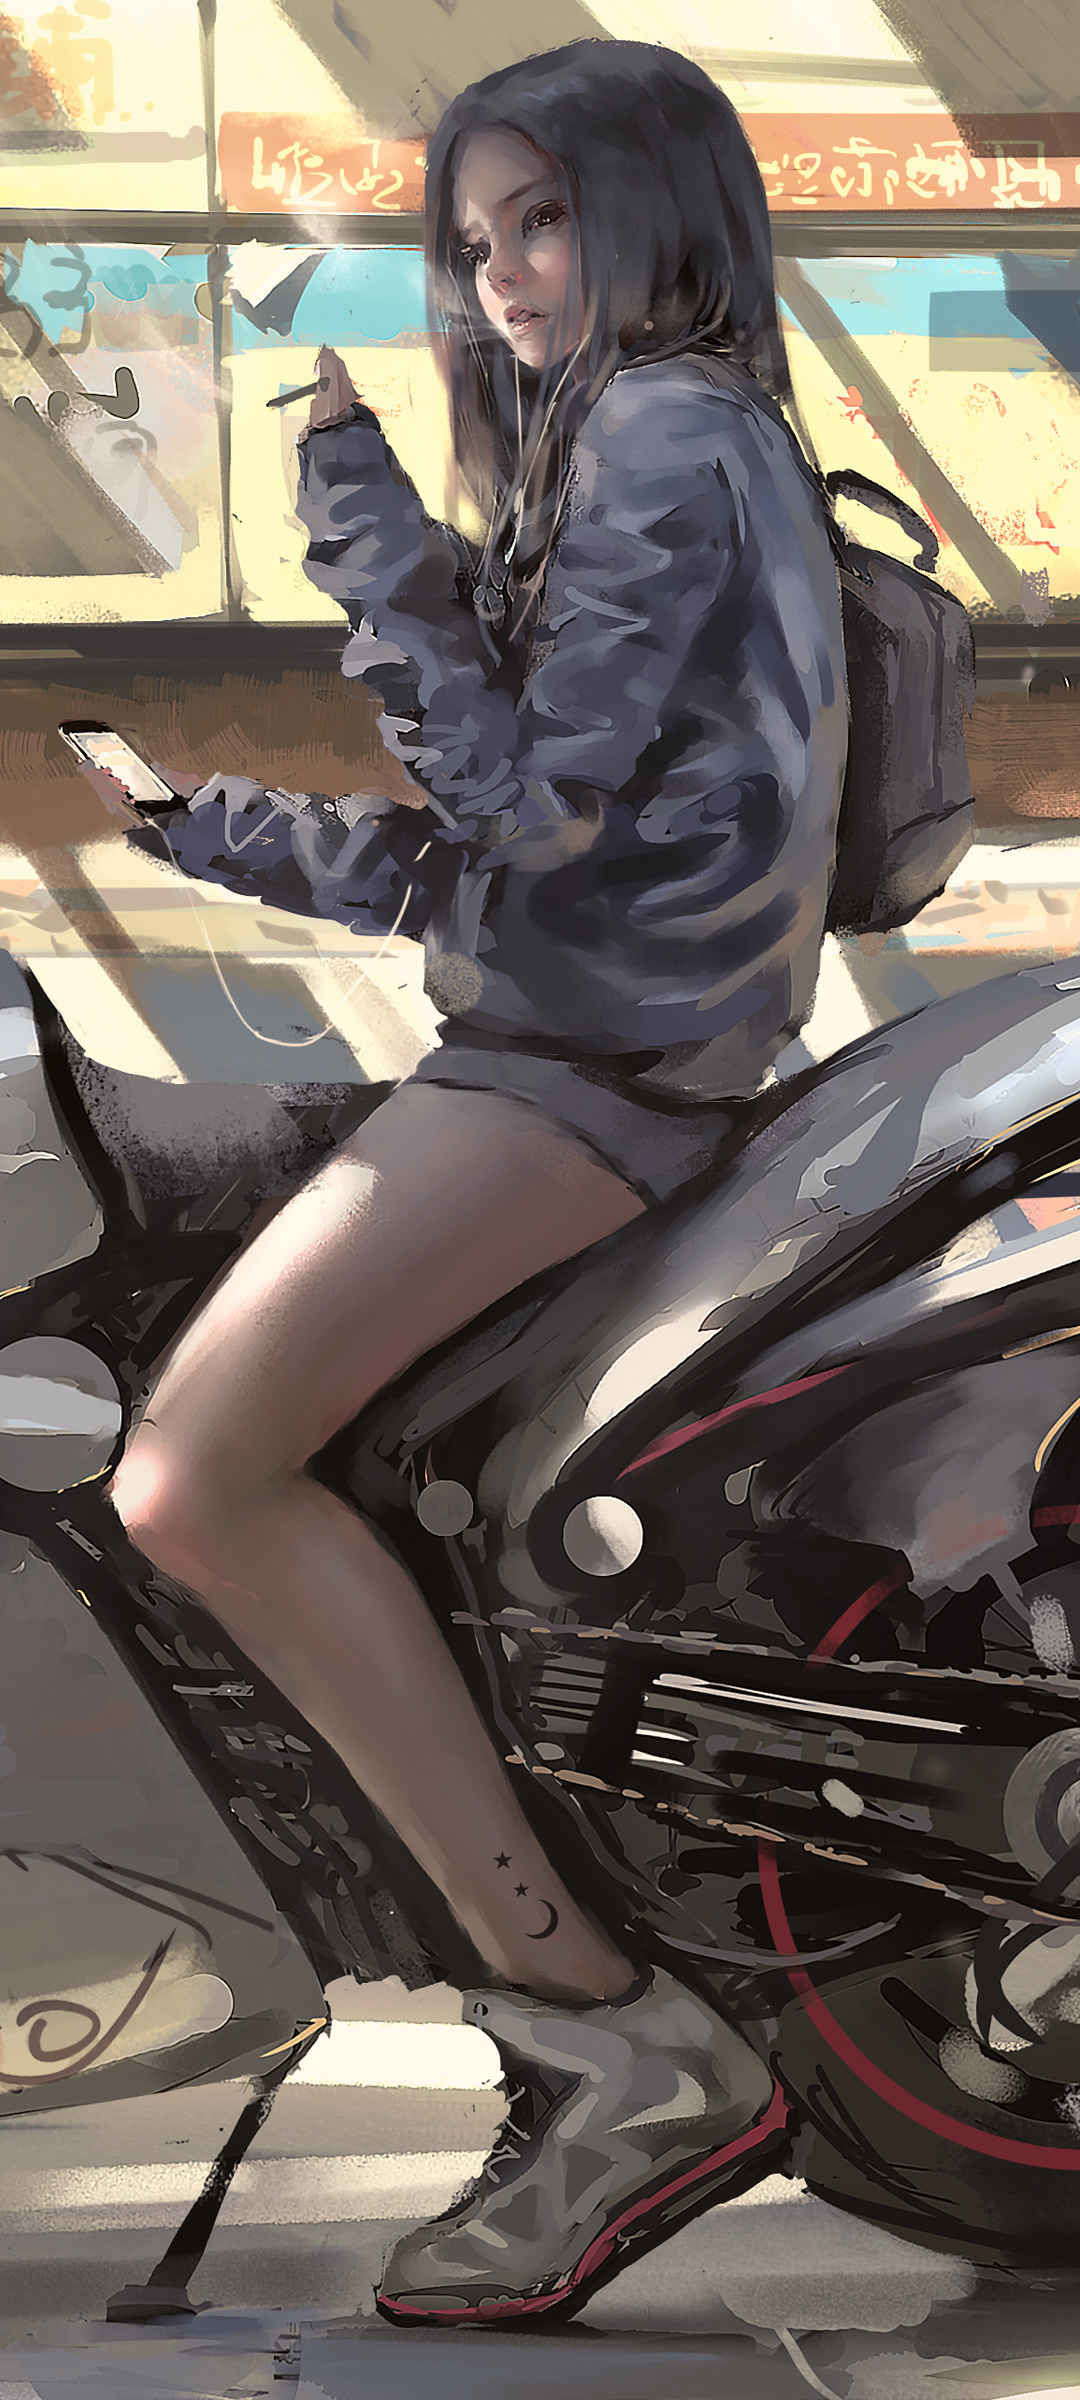 个性女孩 摩托车 厚涂画 鬼刀高清手机壁纸